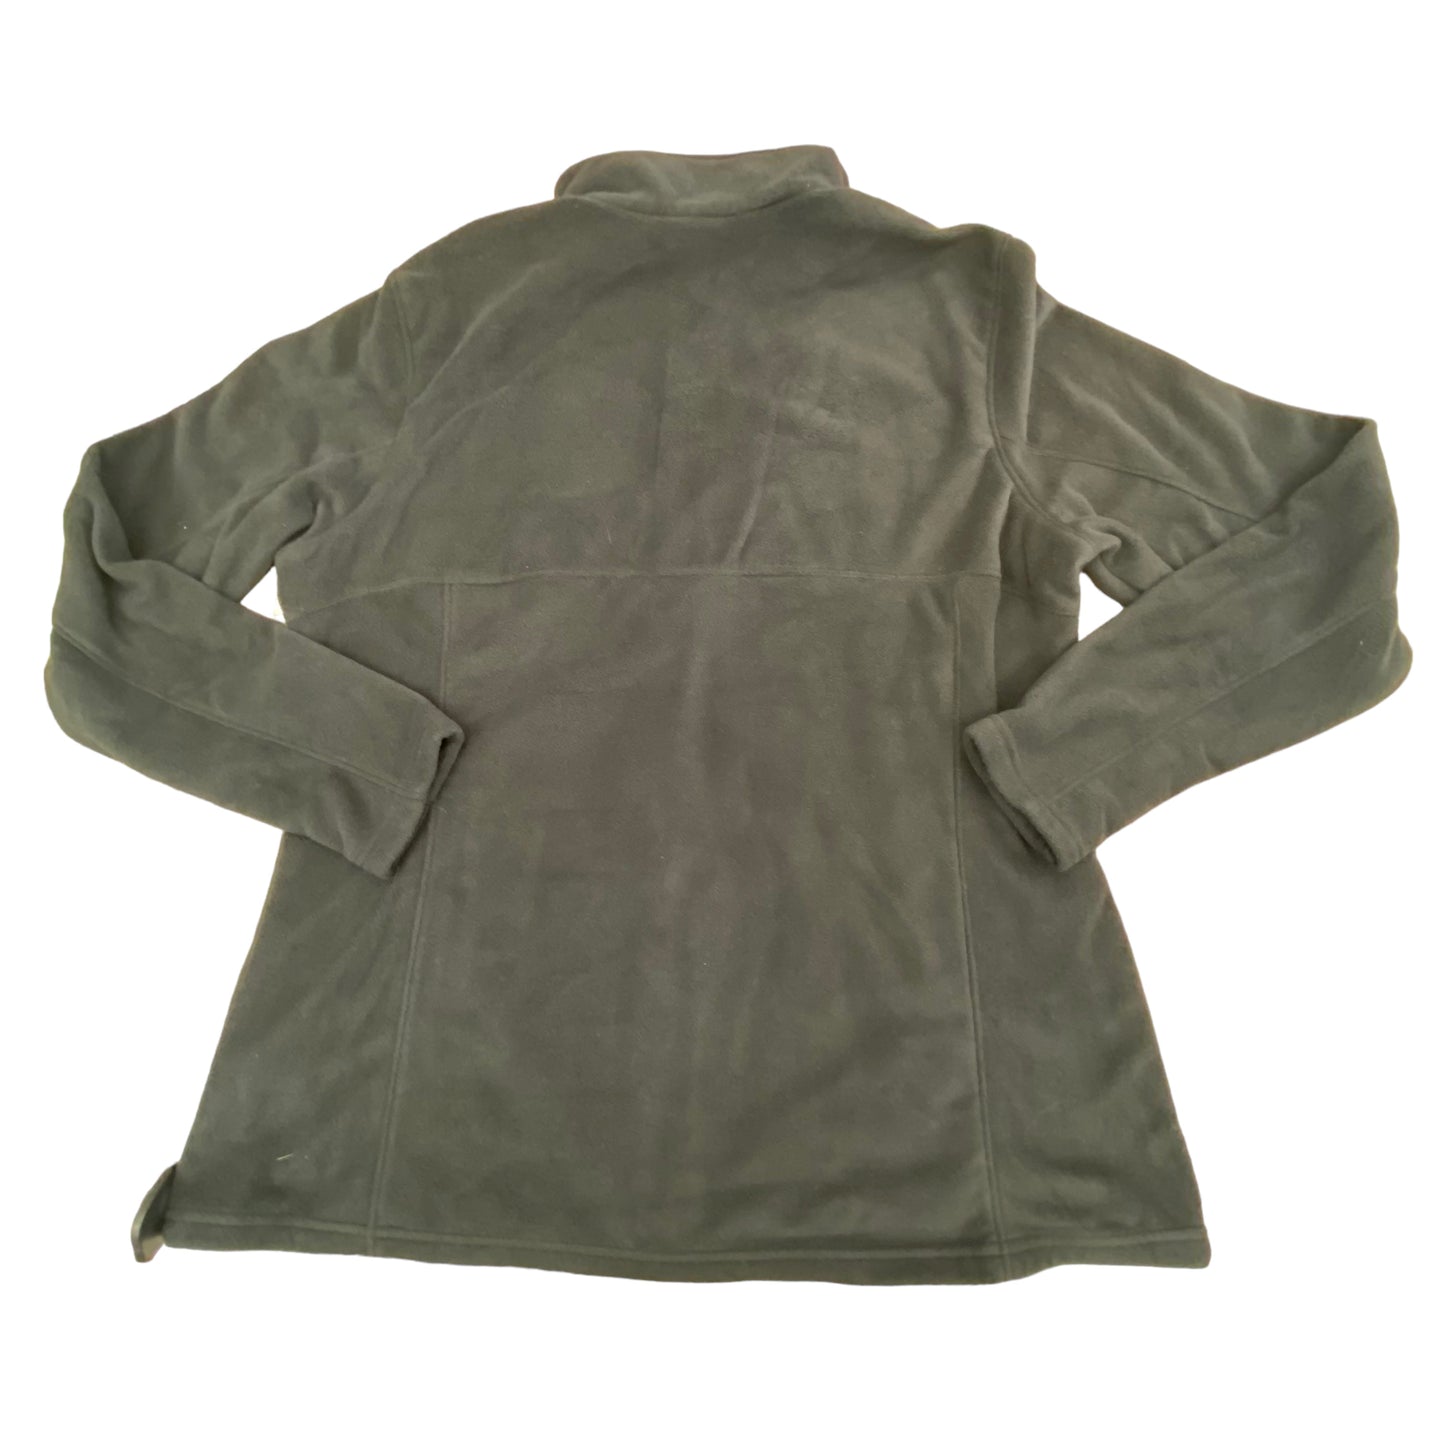 Jacket Fleece By Columbia  Size: 1x